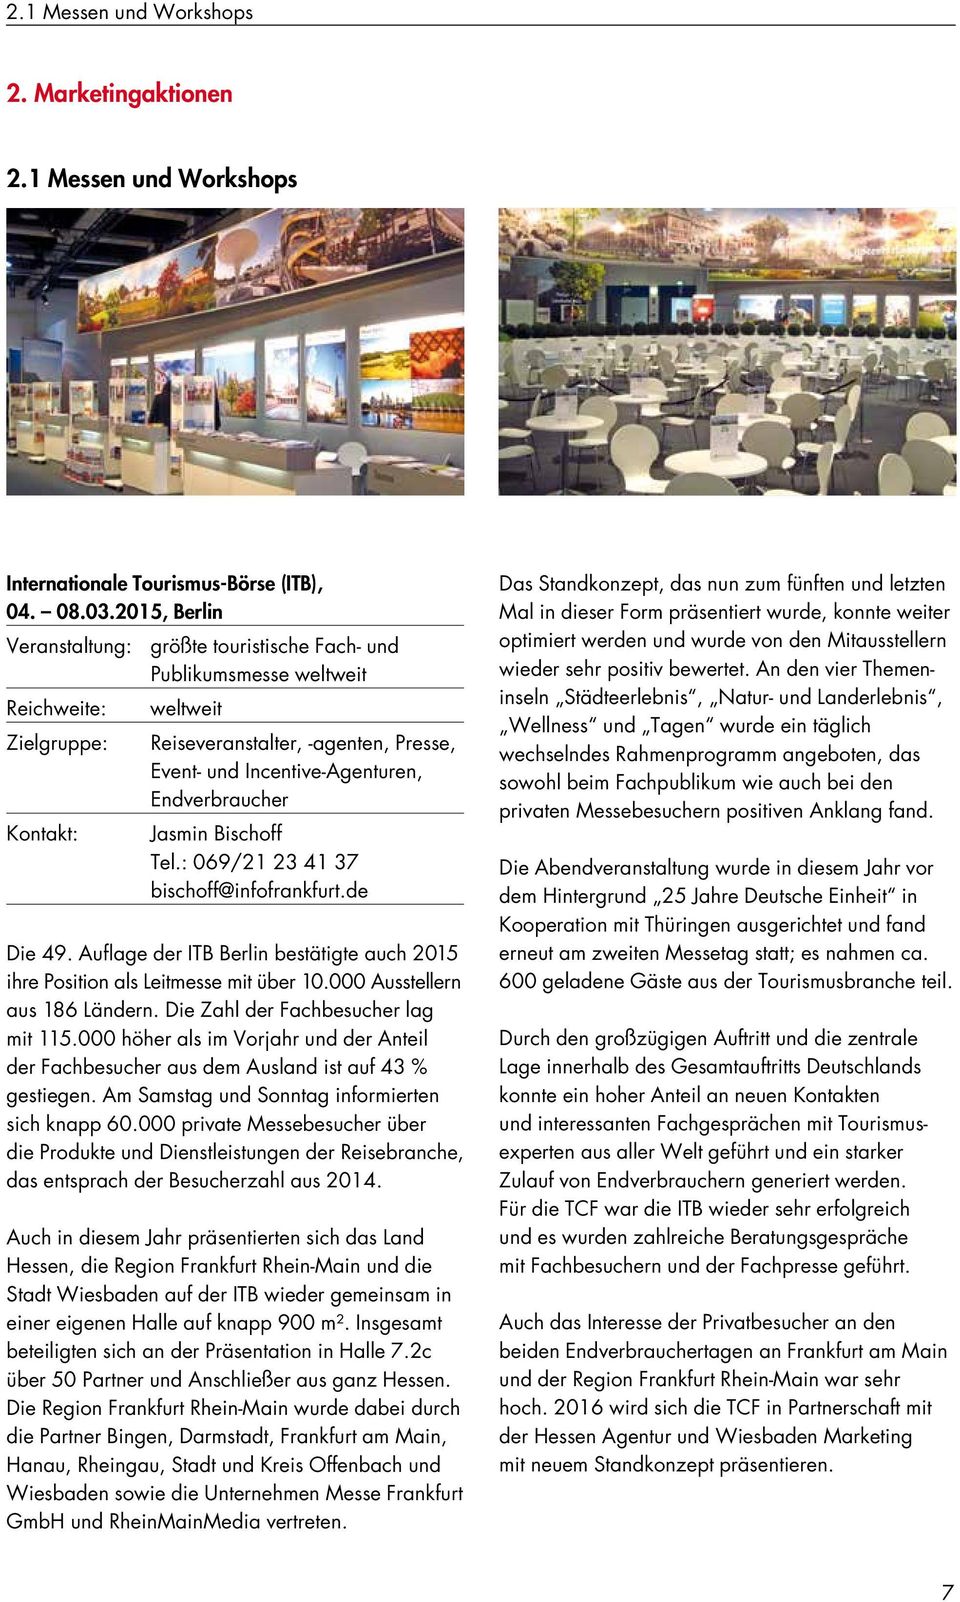 Kontakt: Jasmin Bischoff Tel.: 069/21 23 41 37 bischoff@infofrankfurt.de Die 49. Auflage der ITB Berlin bestätigte auch 2015 ihre Position als Leitmesse mit über 10.000 Ausstellern aus 186 Ländern.